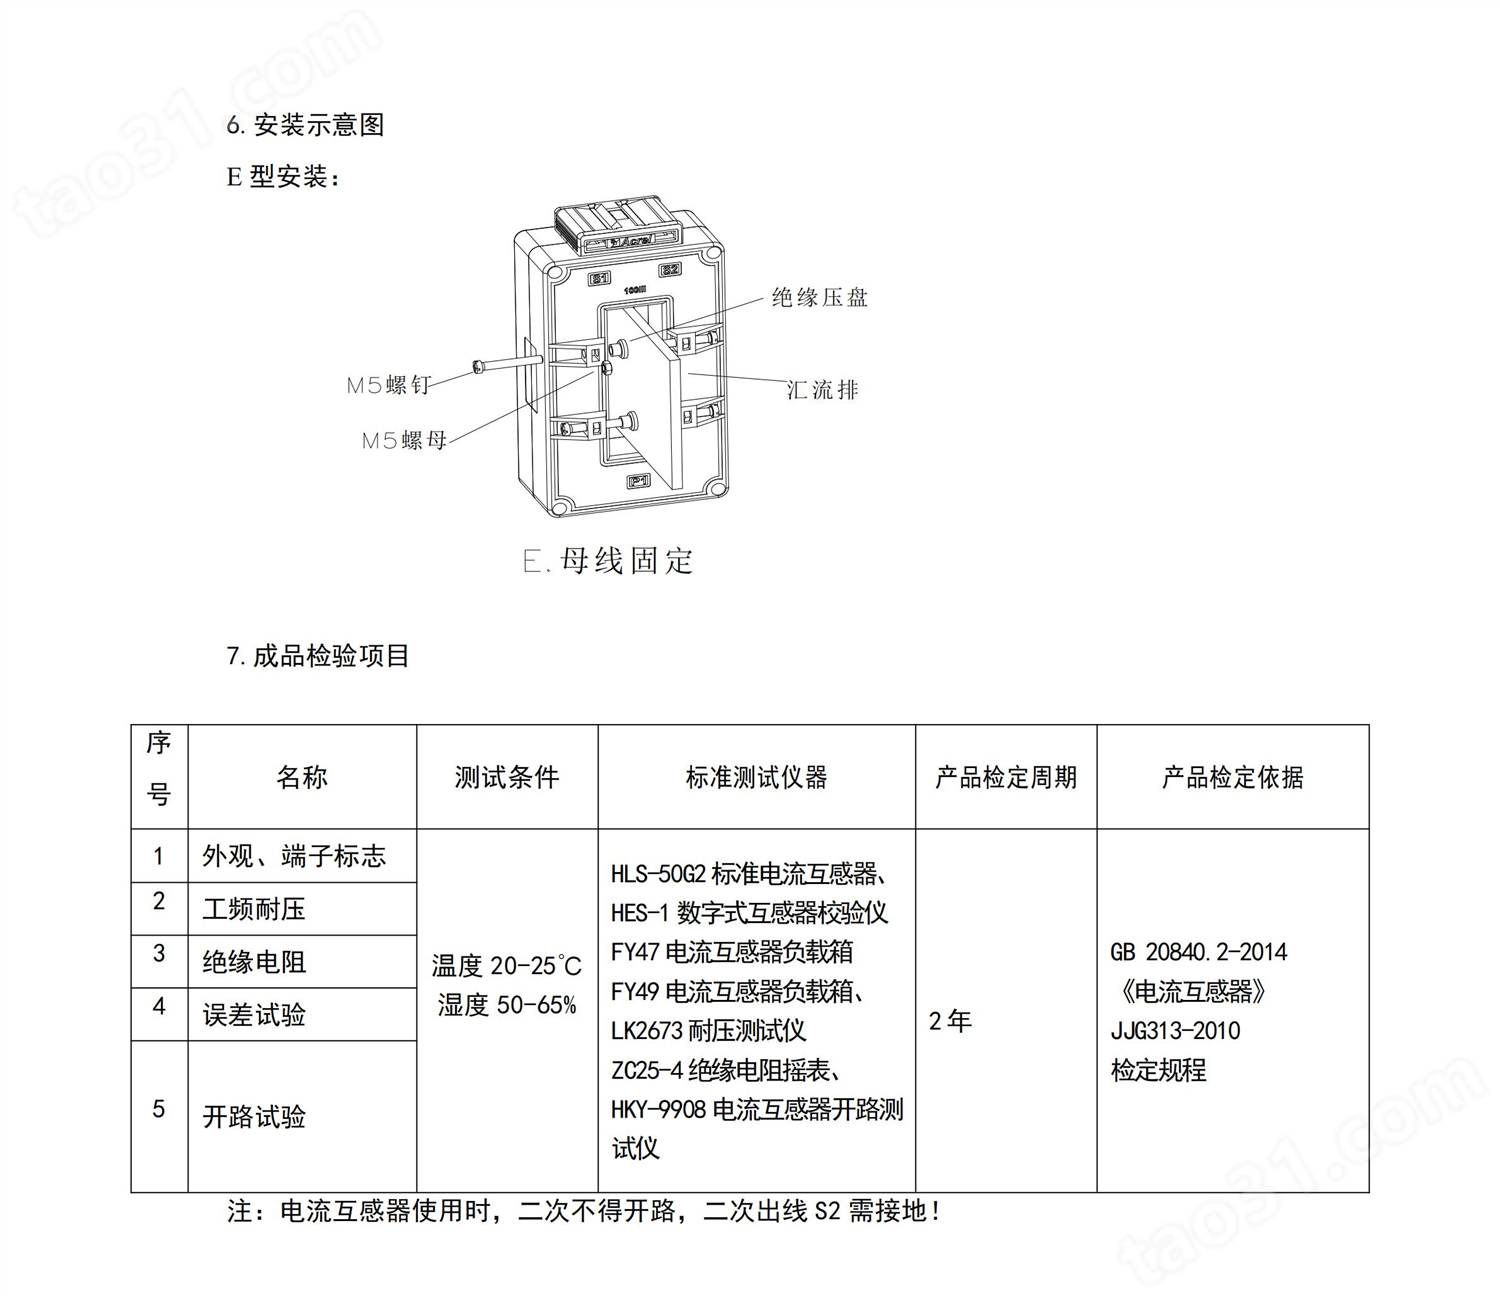 测量保护一体式电流互感器 AKH-0.66/MP60x50额定电流比400/5A